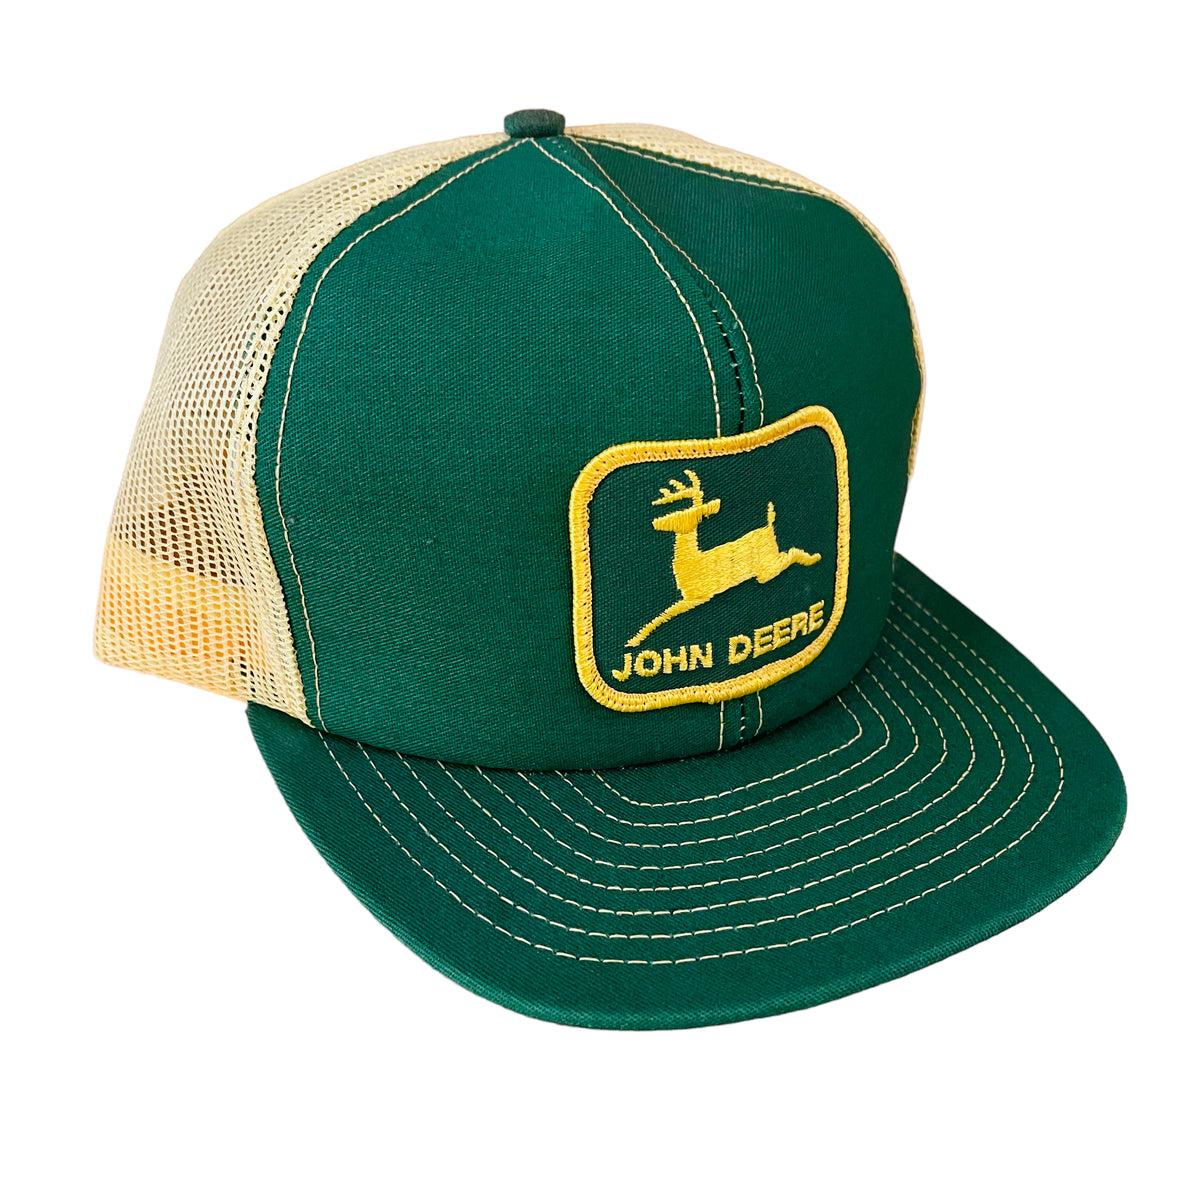 JOHN DEERE KAMLOOPS BC Cap Trucker Hat Snapback Baseball Vintage